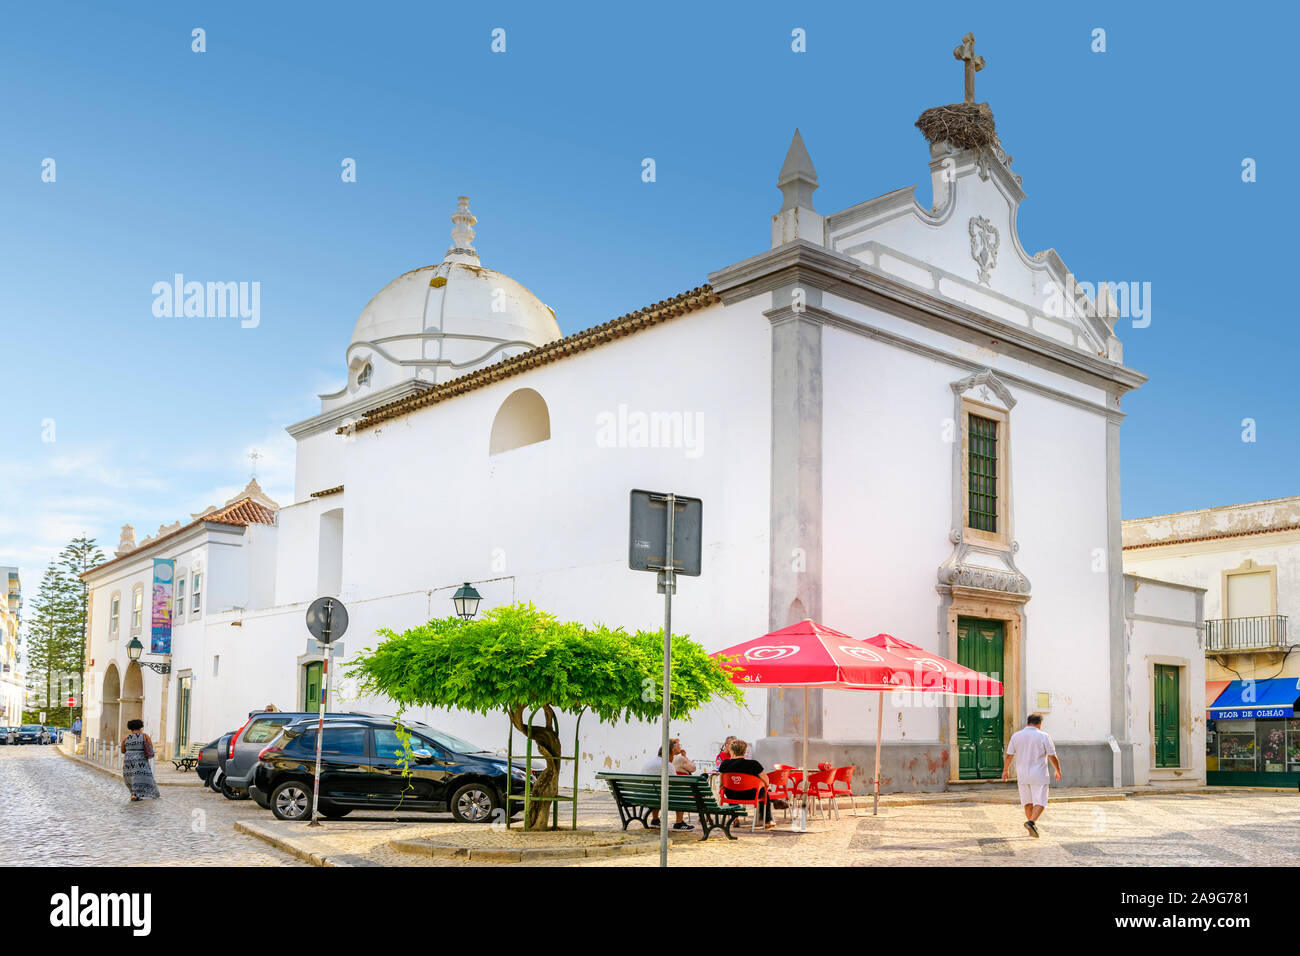 09.17.2019, Algarve, Portugal. The church of Igreja de Nossa Senhora da Soledade. Ohlao, east Algarve Stock Photo